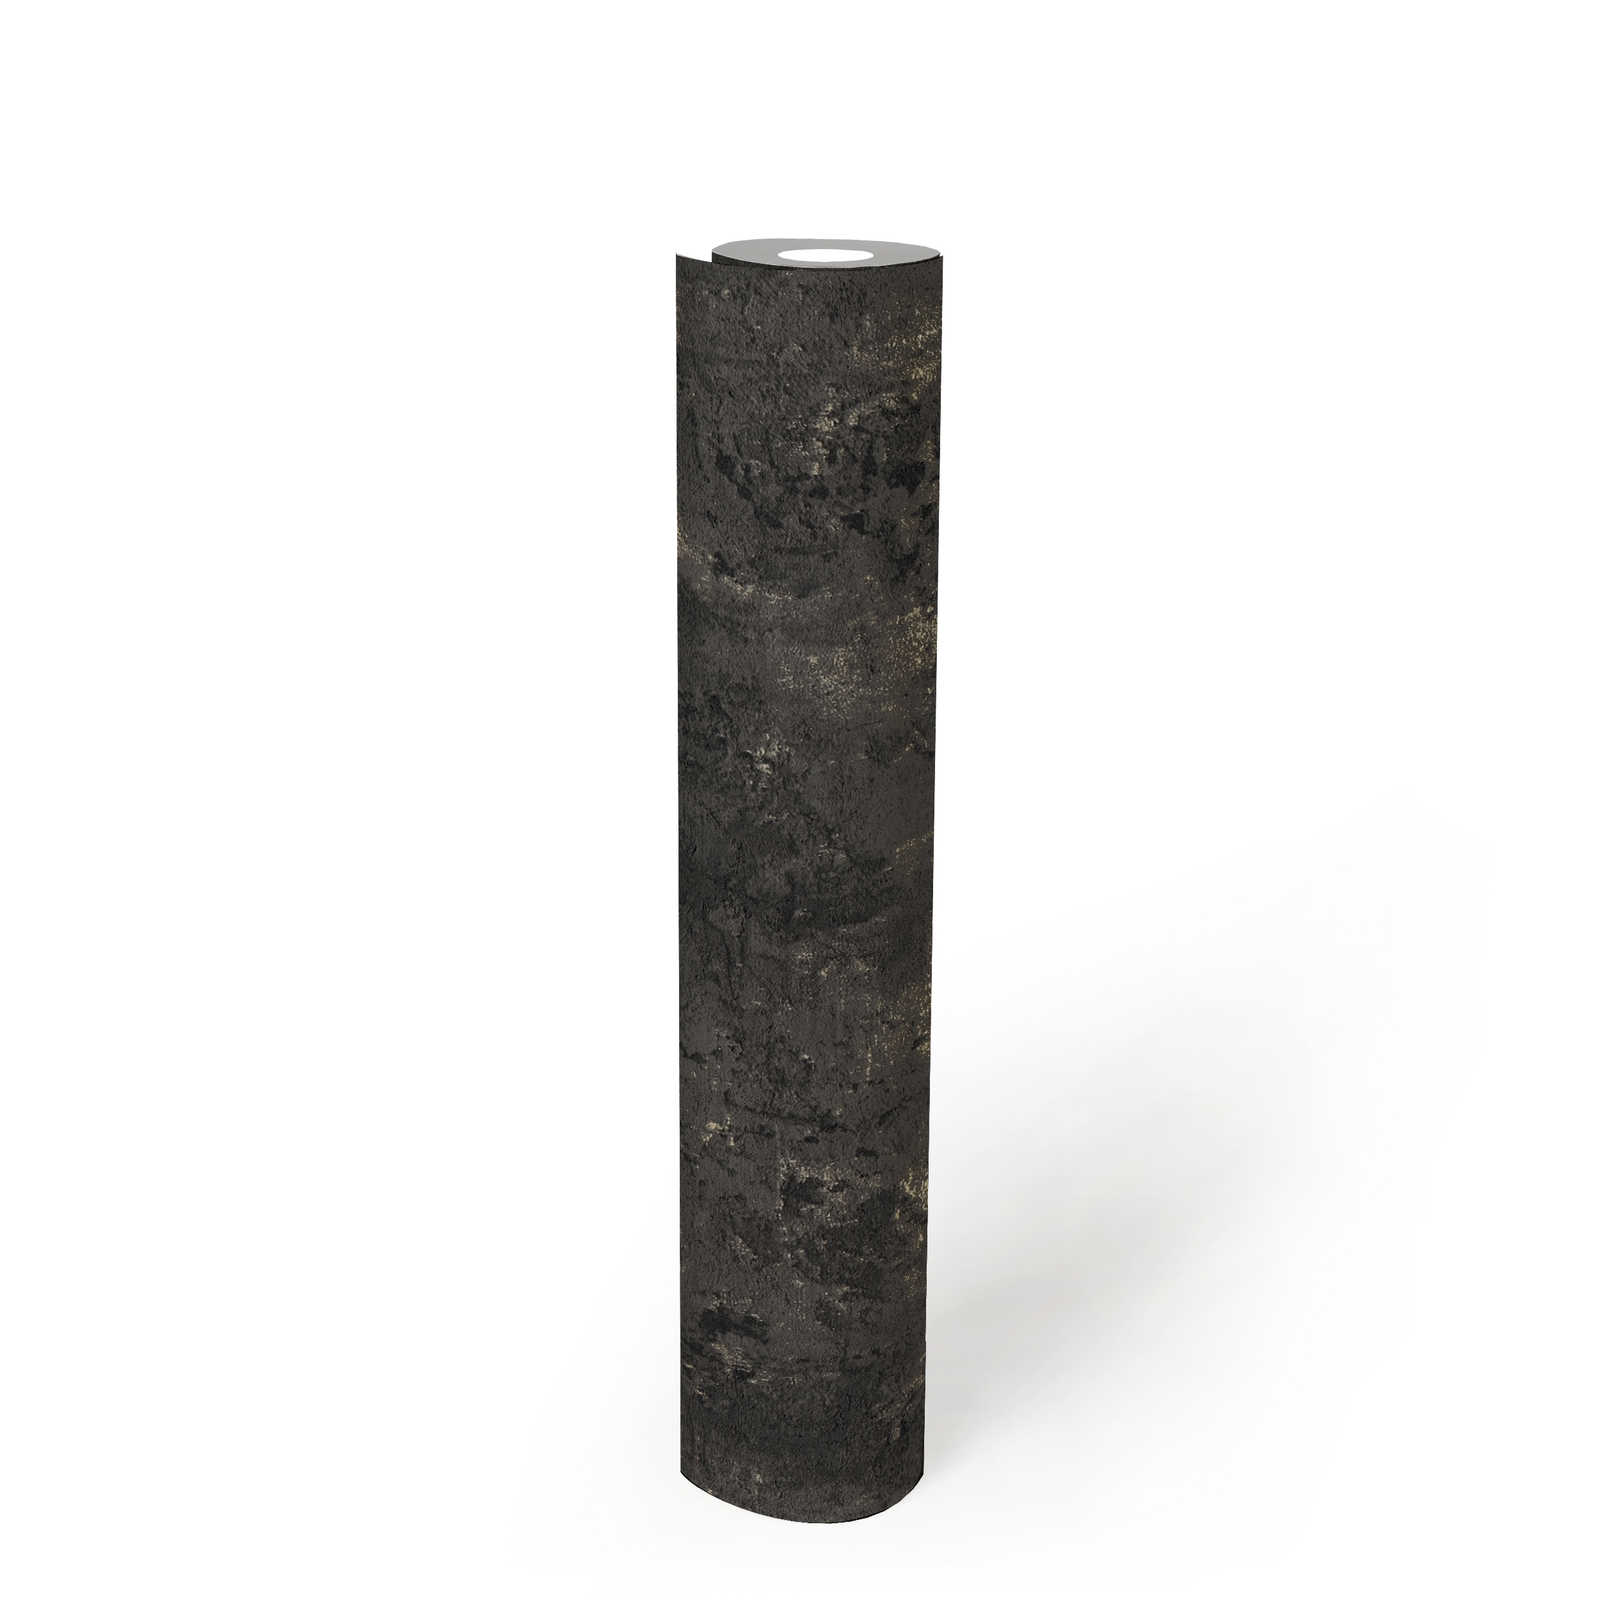             Papier peint noir structuré avec aspect rustique du béton
        